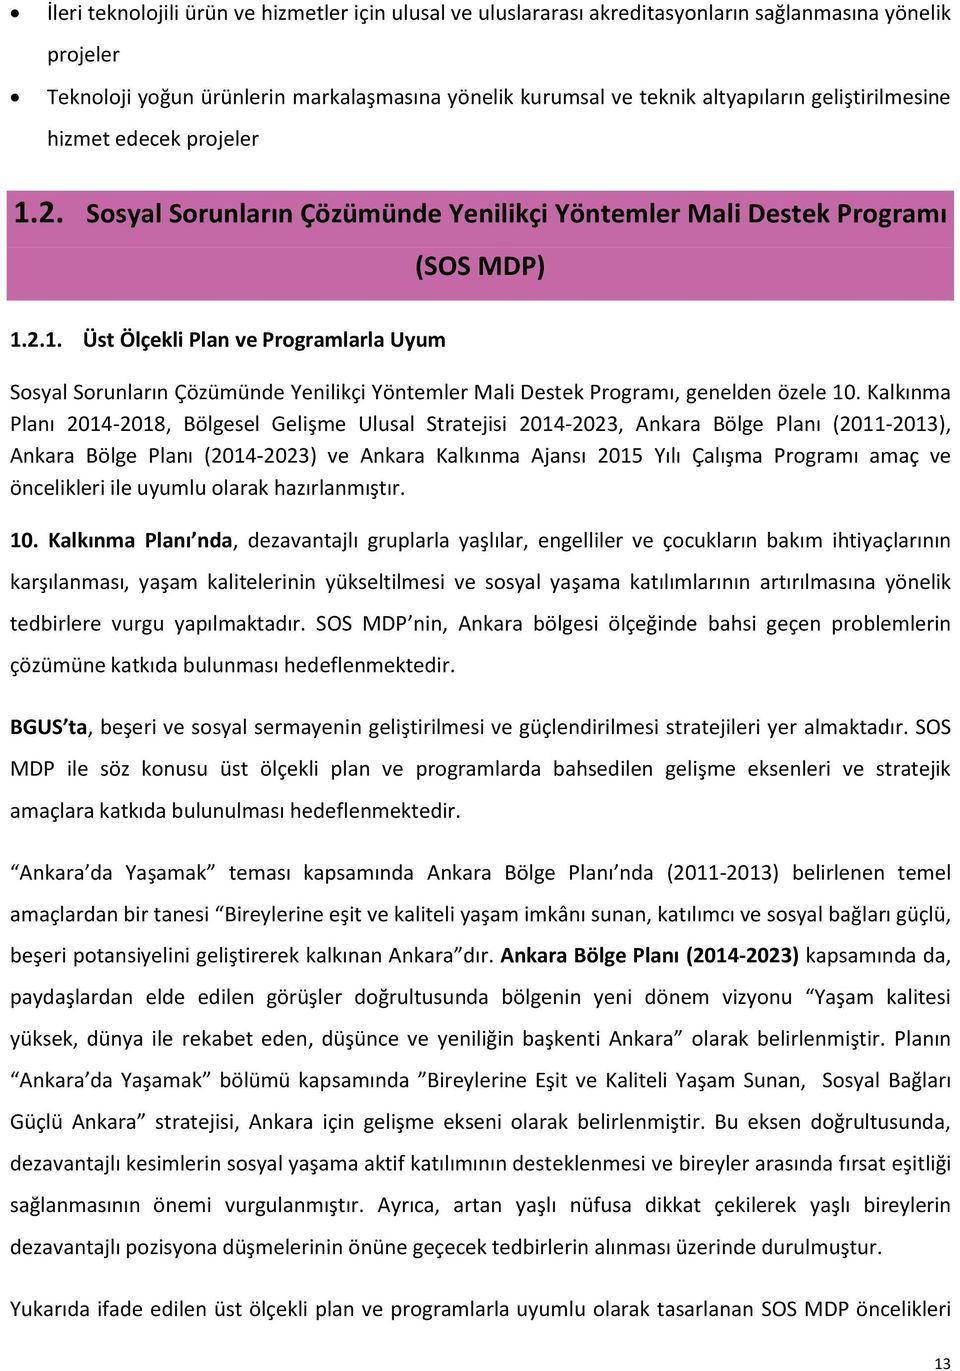 Kalkınma Planı 2014-2018, Bölgesel Gelişme Ulusal Stratejisi 2014-2023, Ankara Bölge Planı (2011-2013), Ankara Bölge Planı (2014-2023) ve Ankara Kalkınma Ajansı 2015 Yılı Çalışma Programı amaç ve